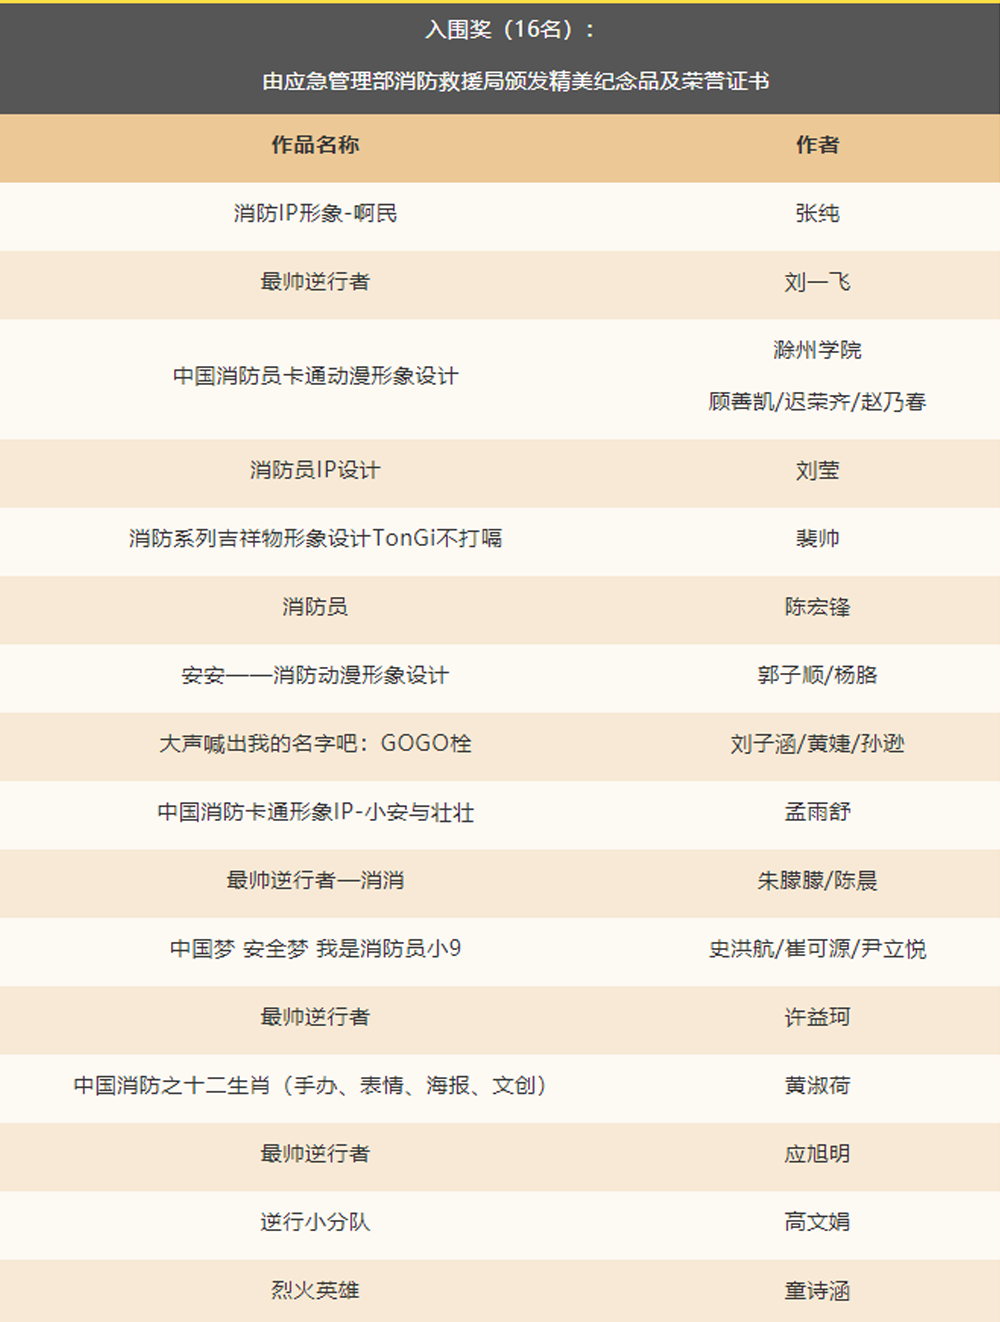 中国消防动漫形象创意设计大赛获奖名单及获奖作品(图12)